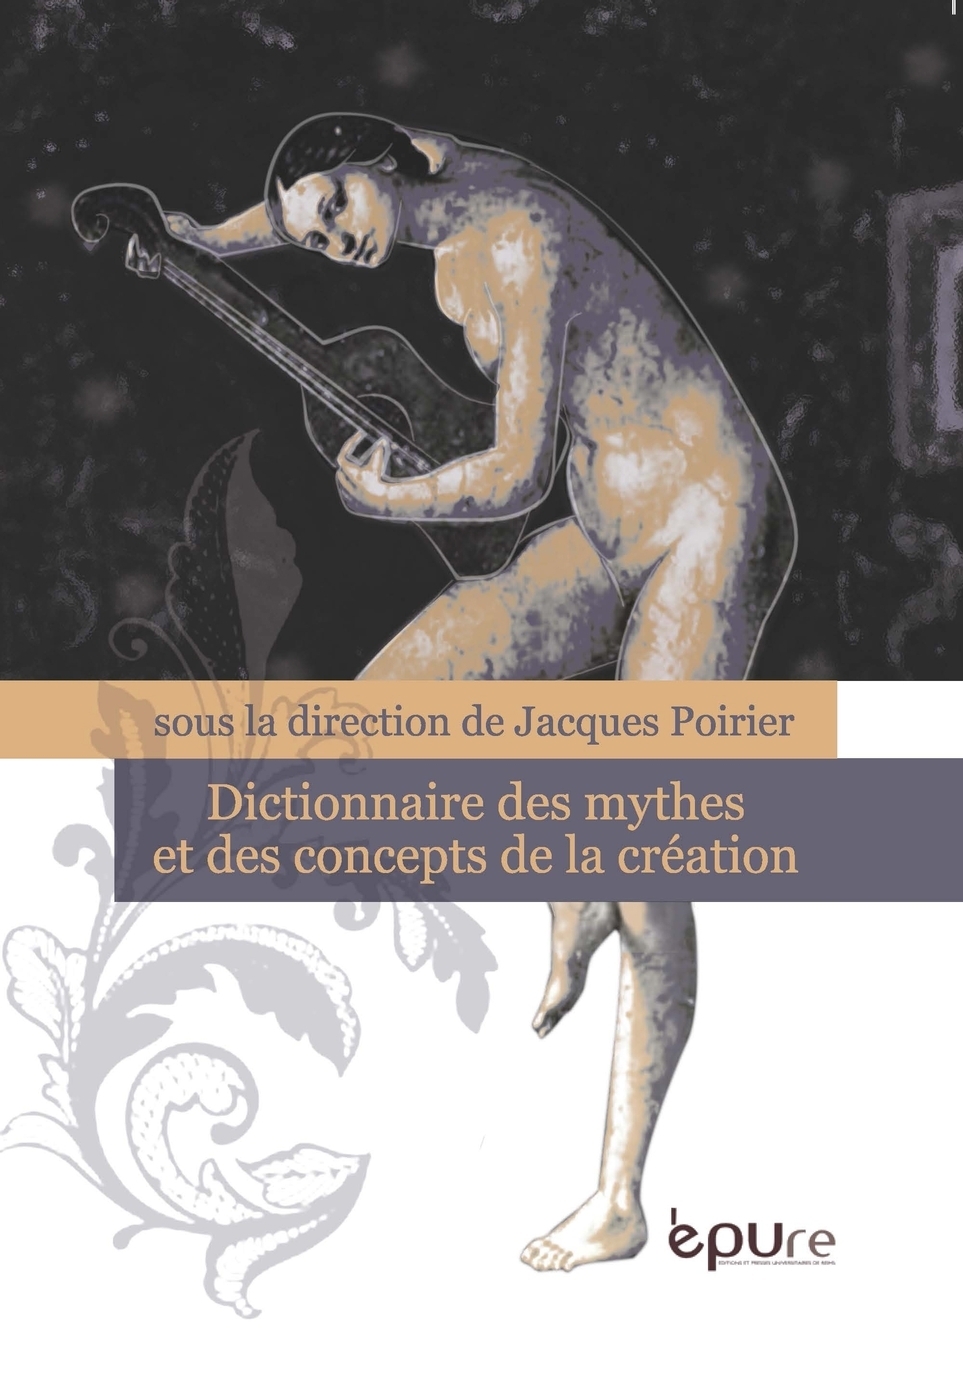 J. Poirier (dir.), Dictionnaire des mythes et des concepts de la création